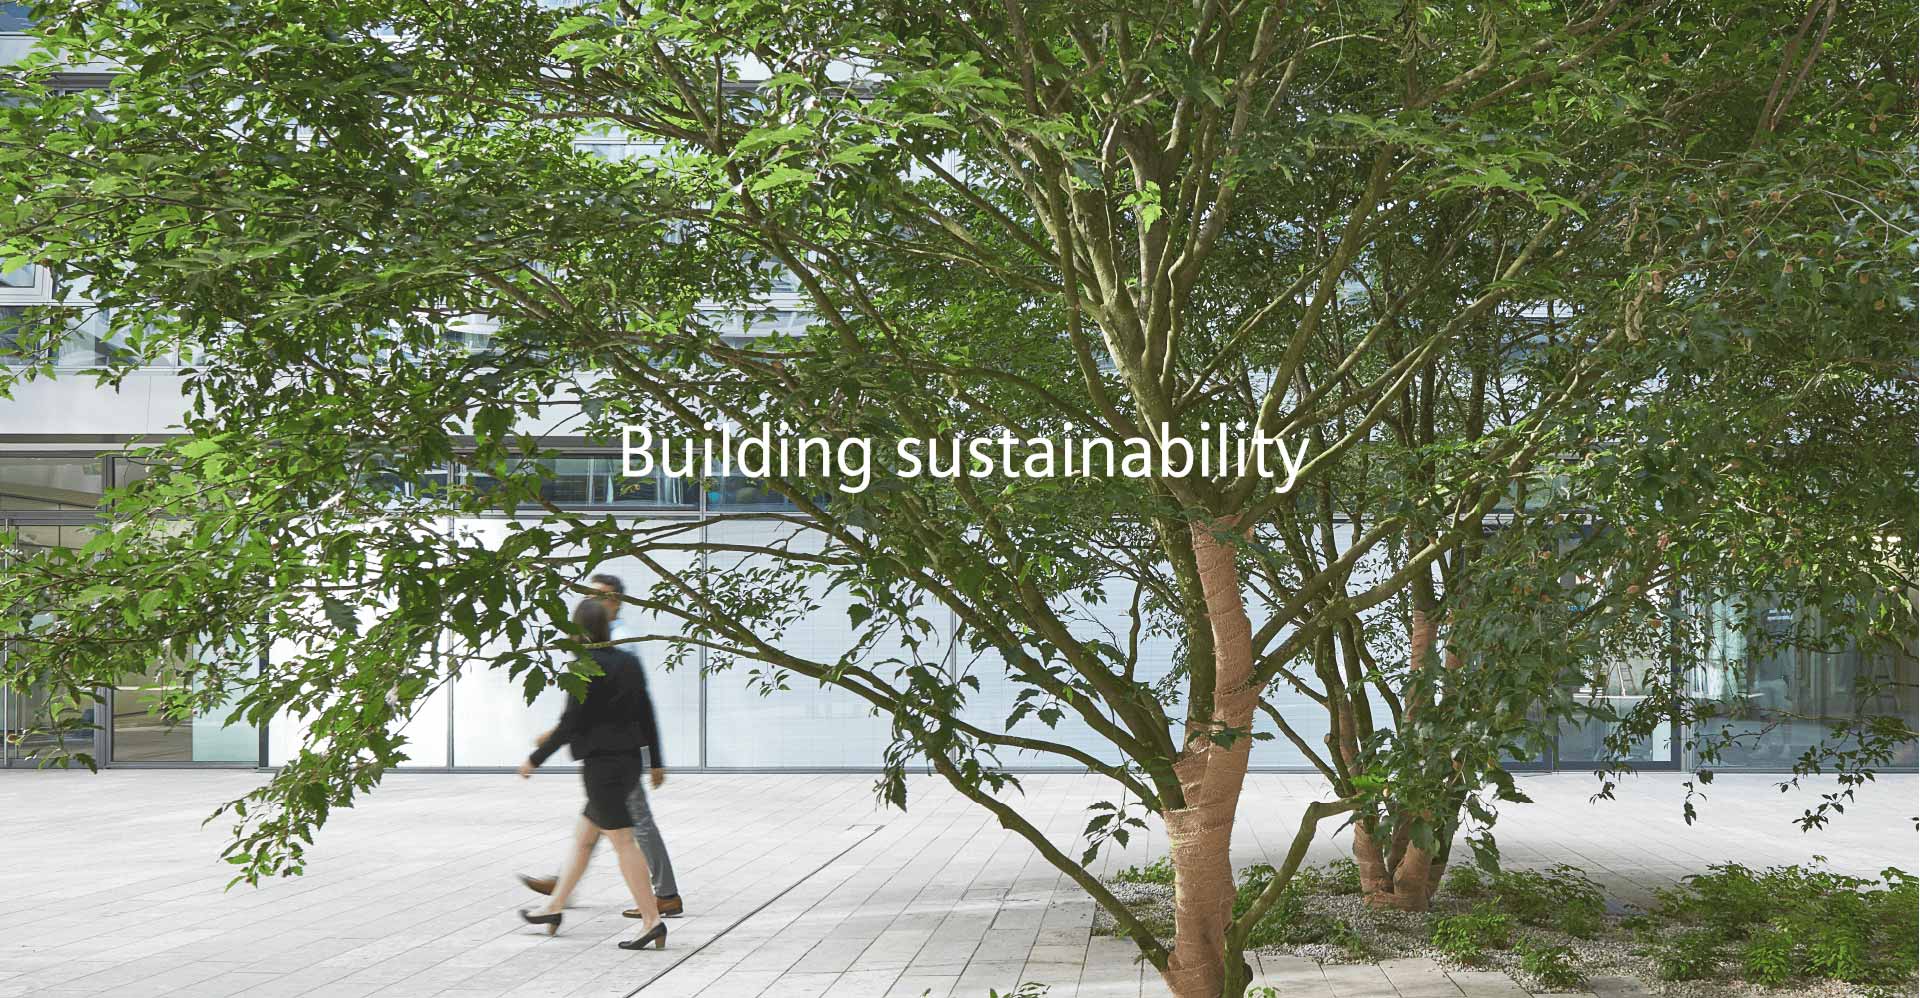 Menschen die an einem Gebäude mit Bäumen vorbei laufen mir dem Schriftzug Building sustainability